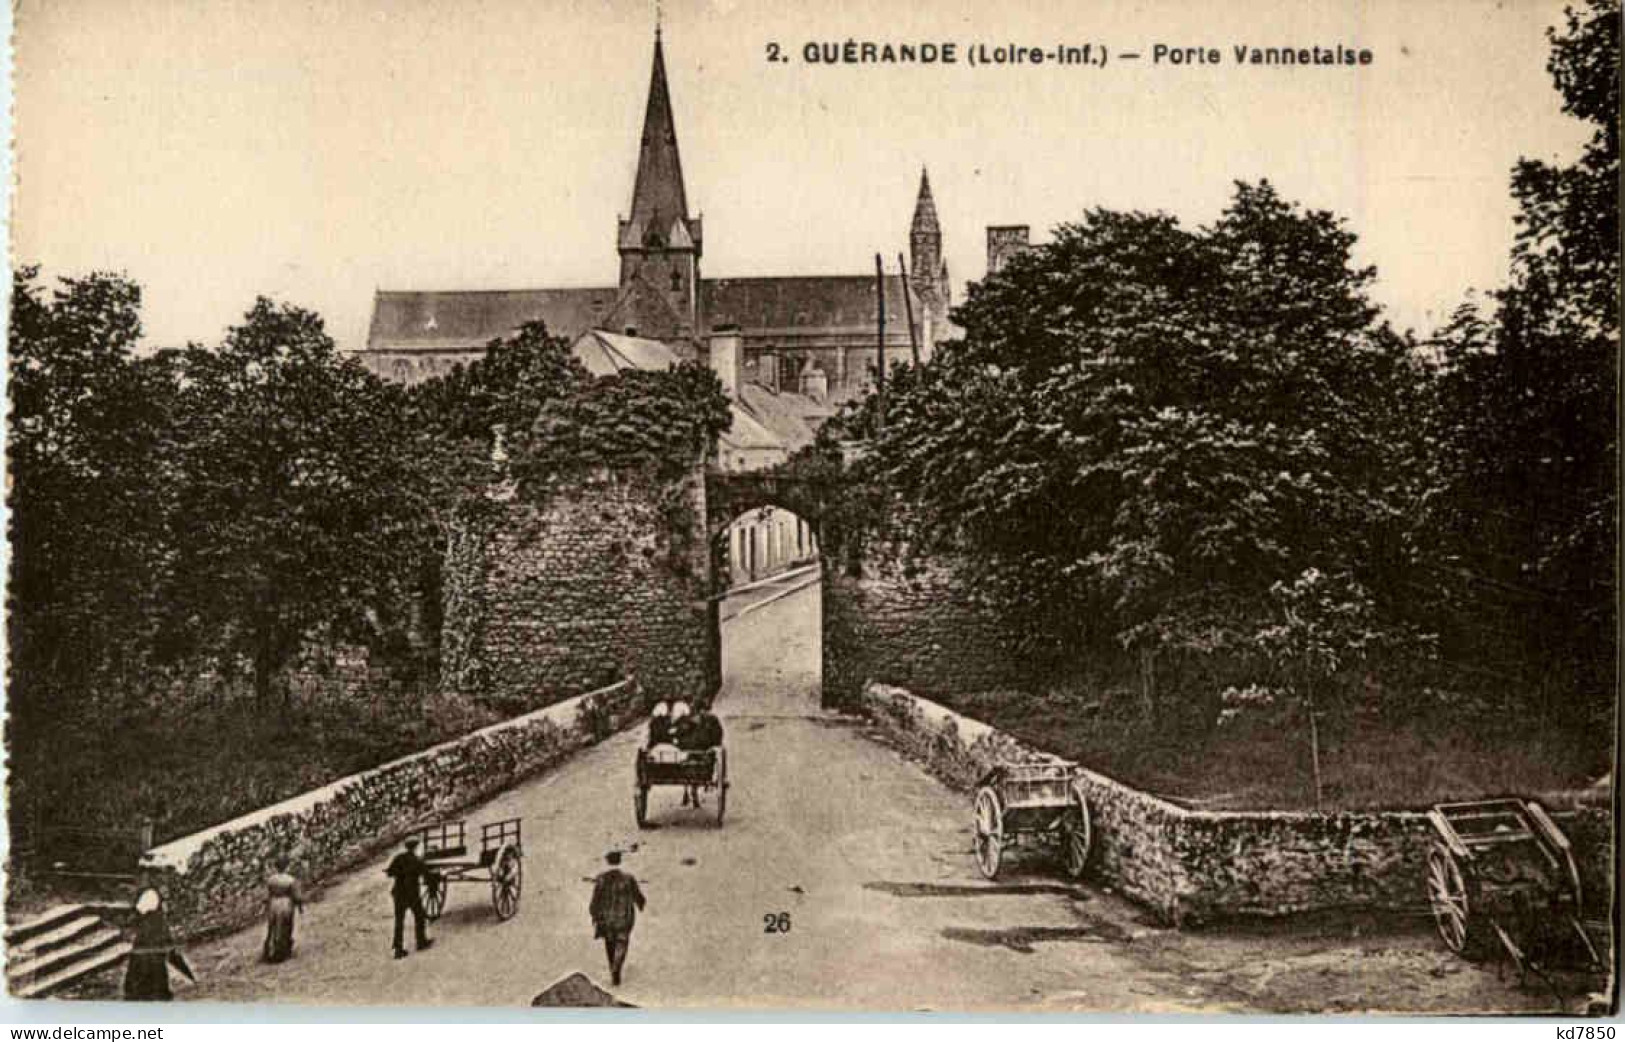 Guerande - Porte Vannetaise - Guérande